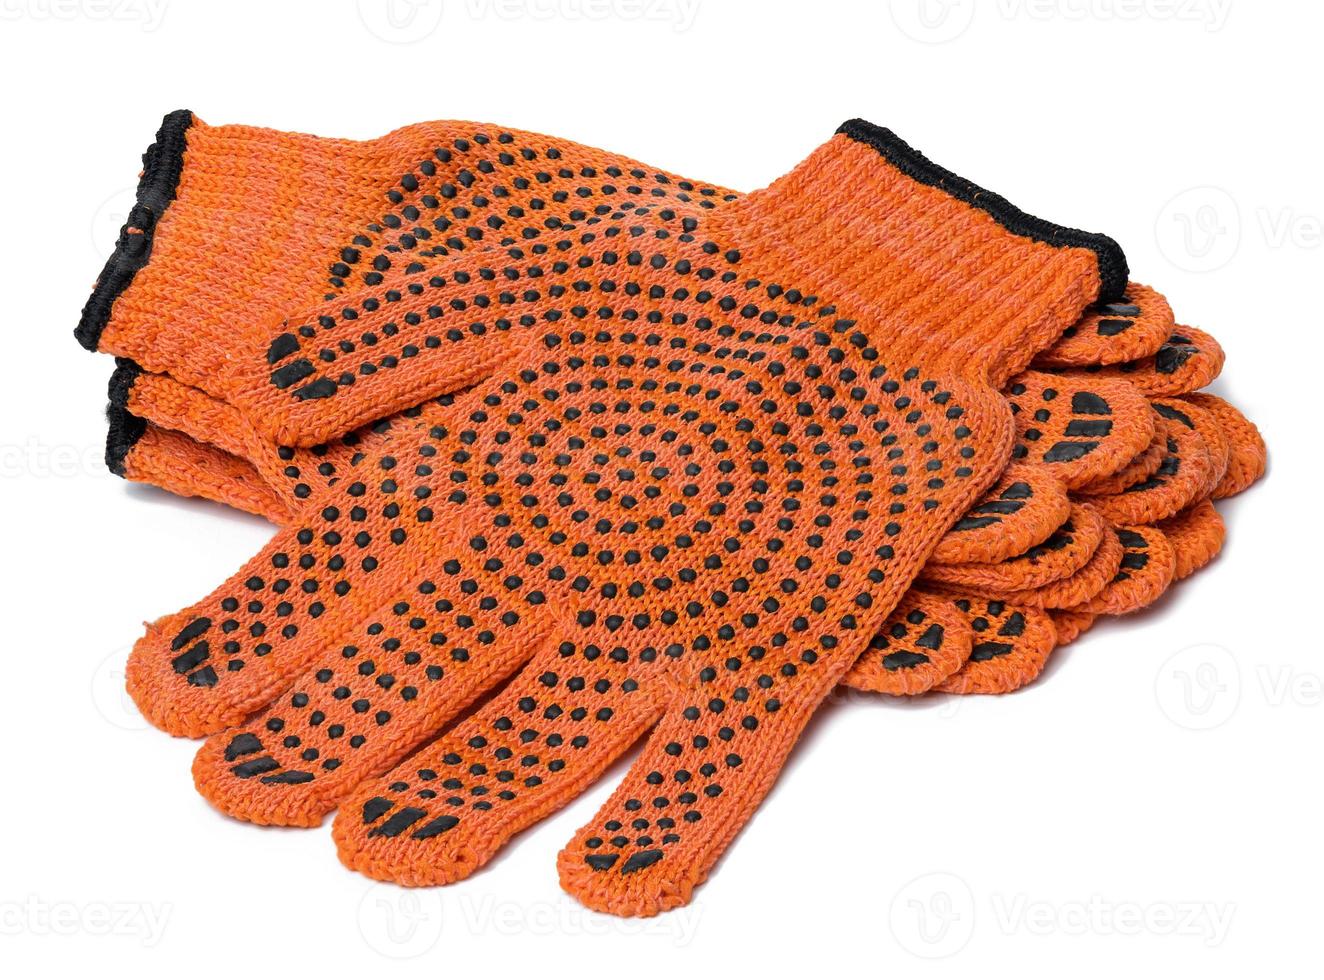 textil- orange arbete handskar på en vit bakgrund. skyddande Kläder foto